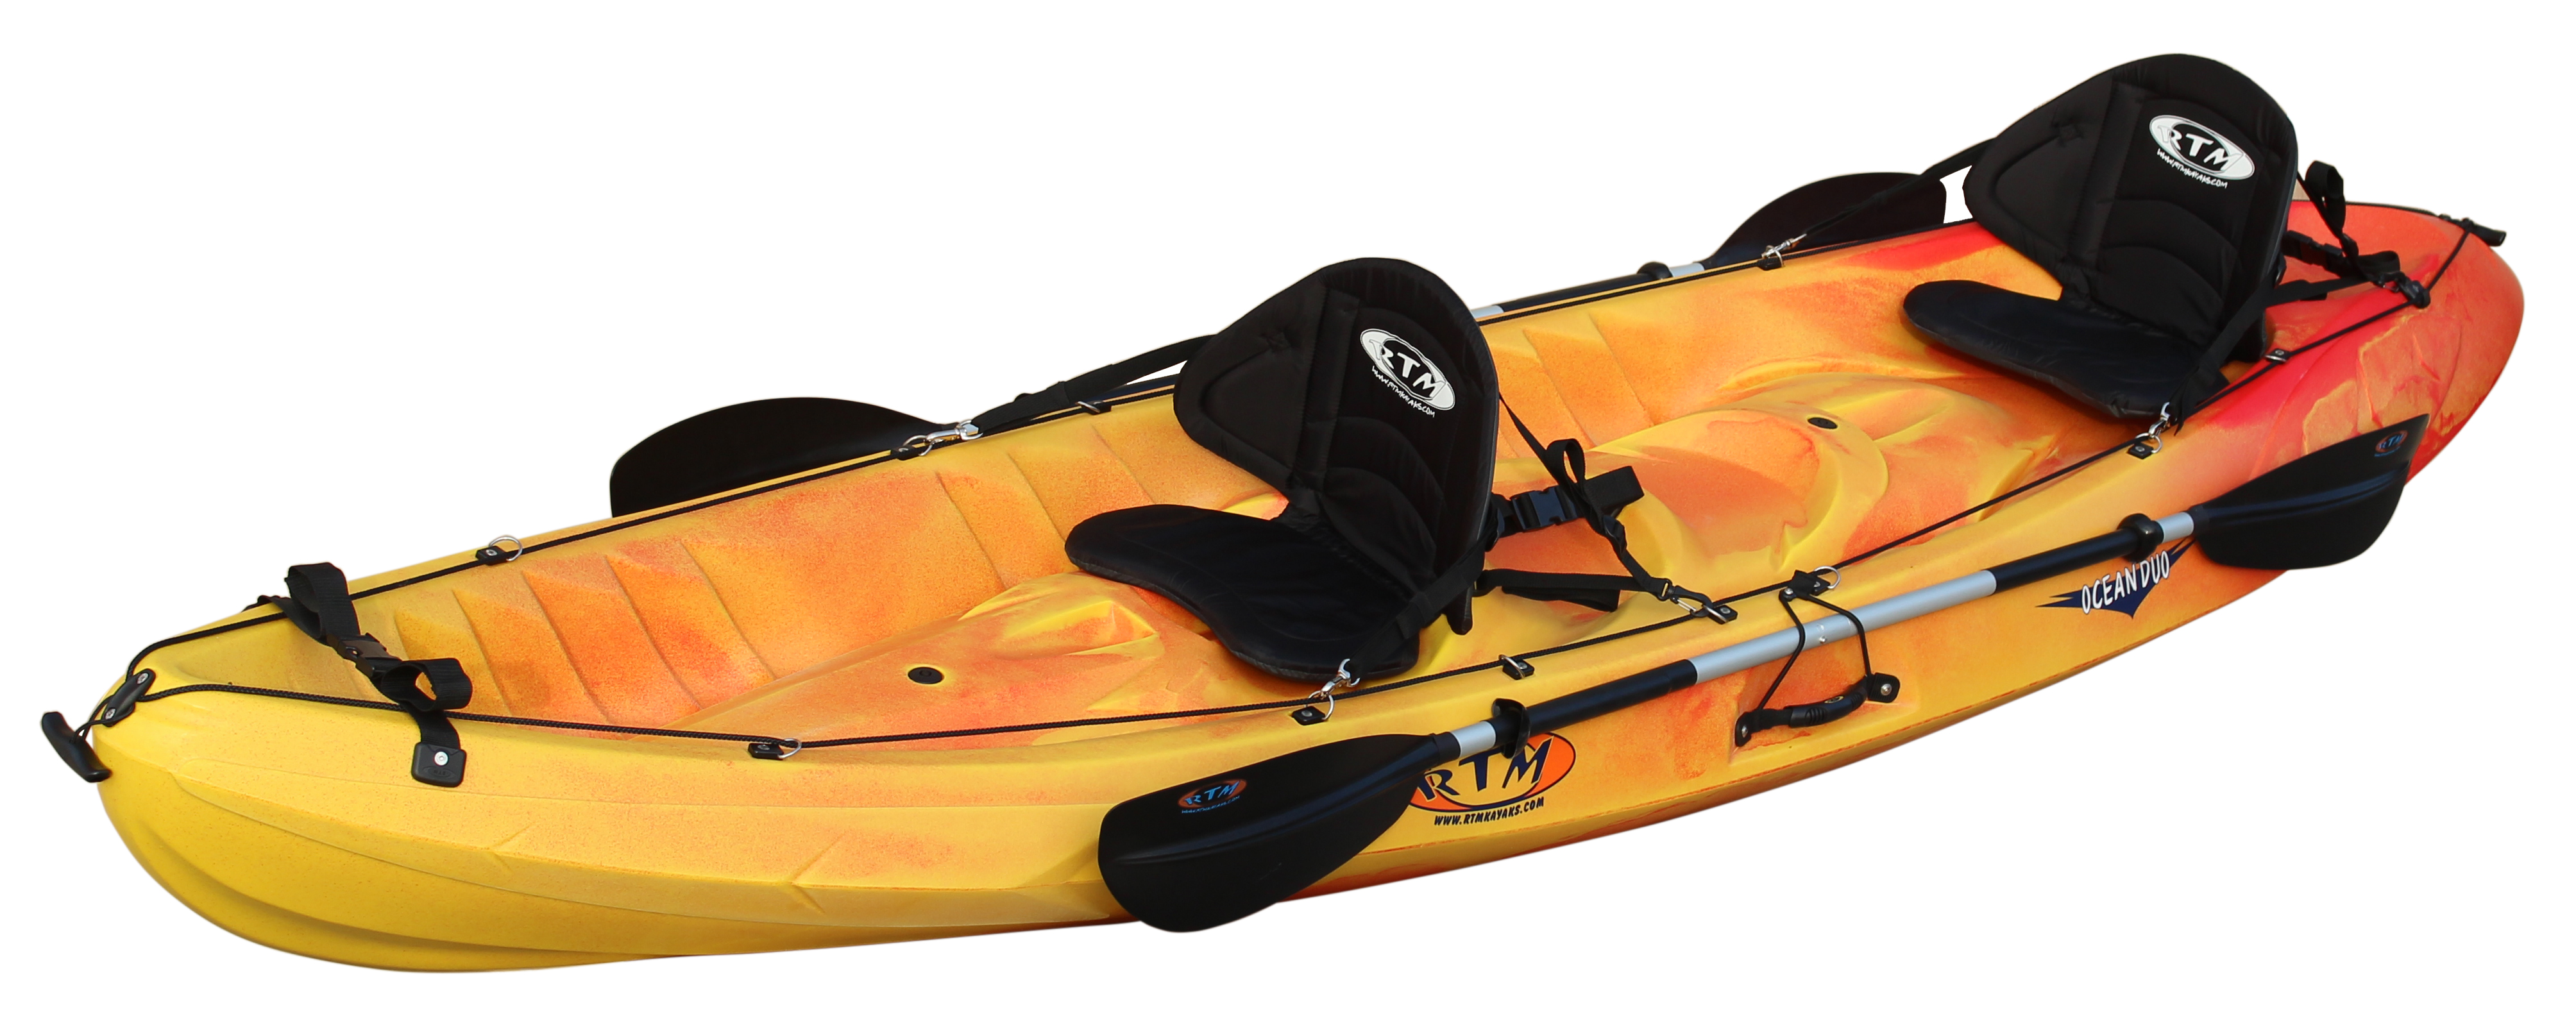 rtm ocean duo kayak